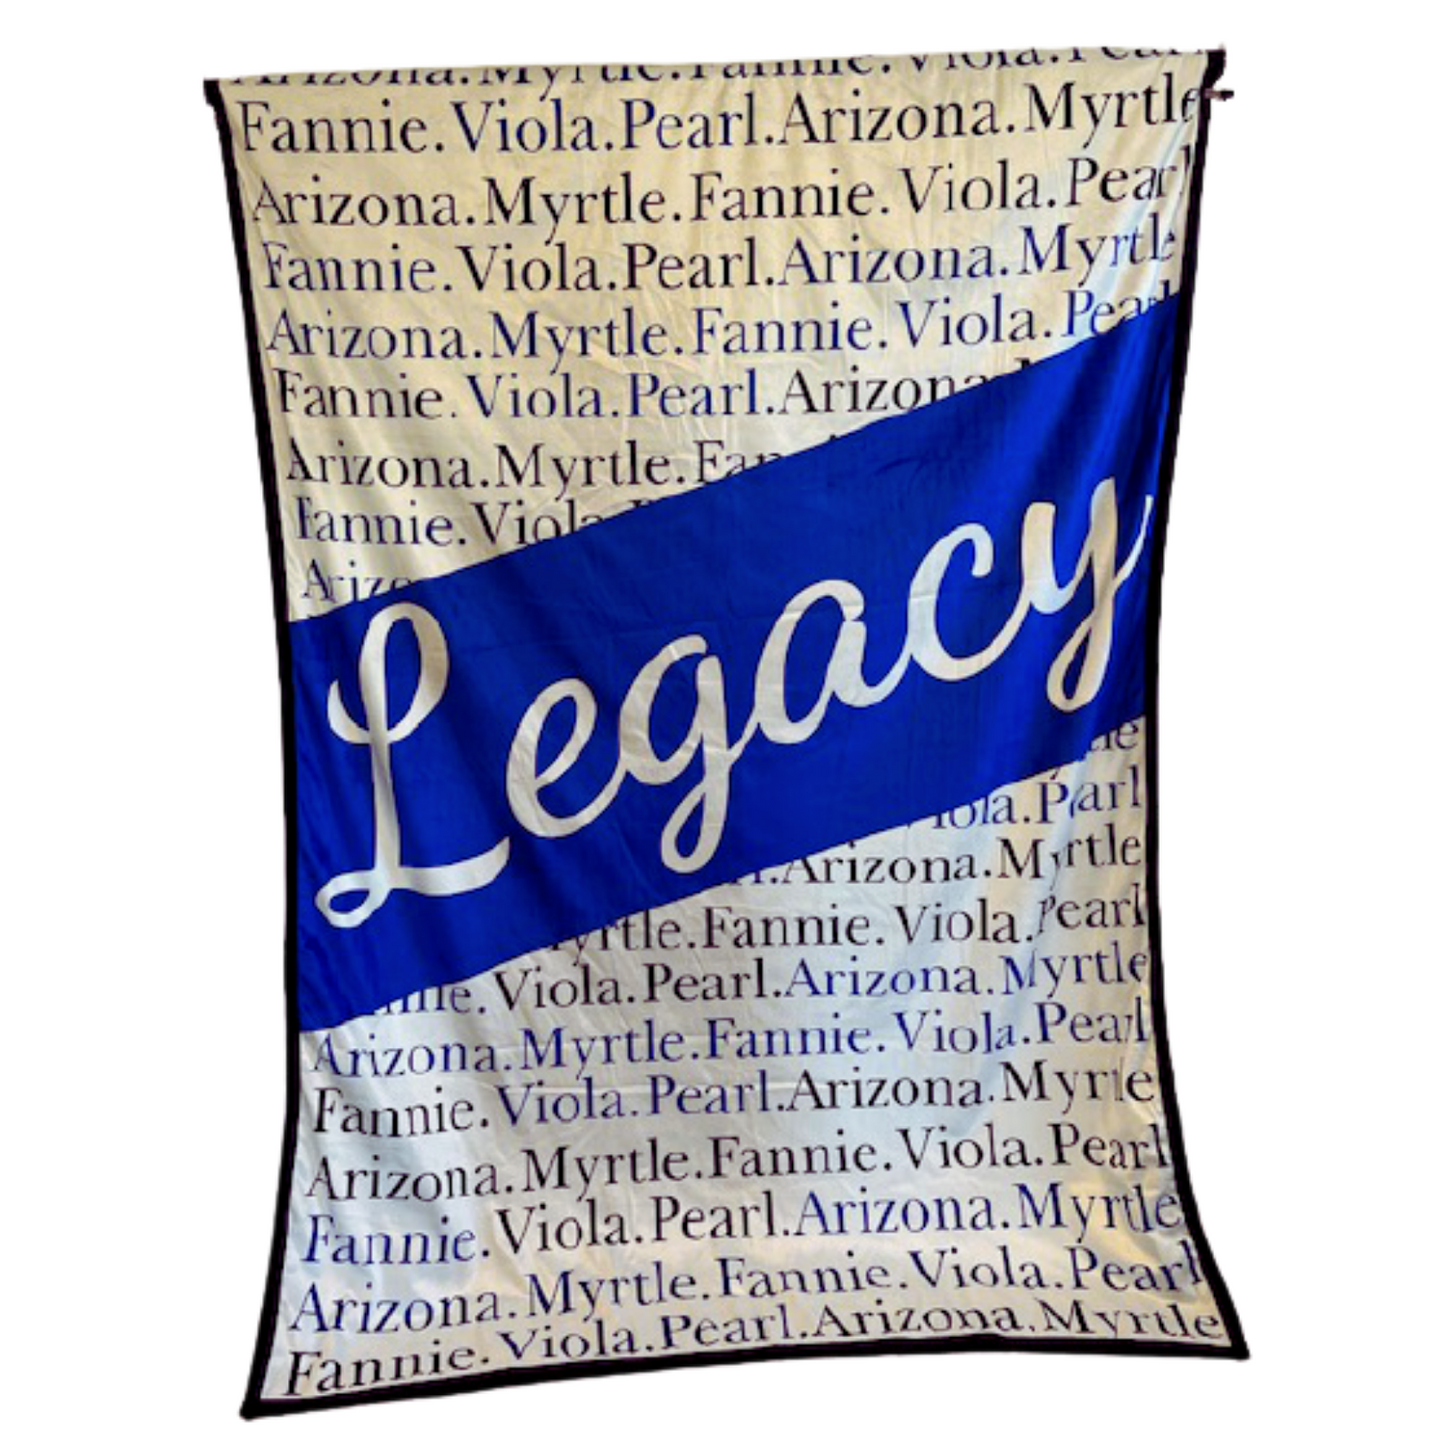 Legacy Blanket